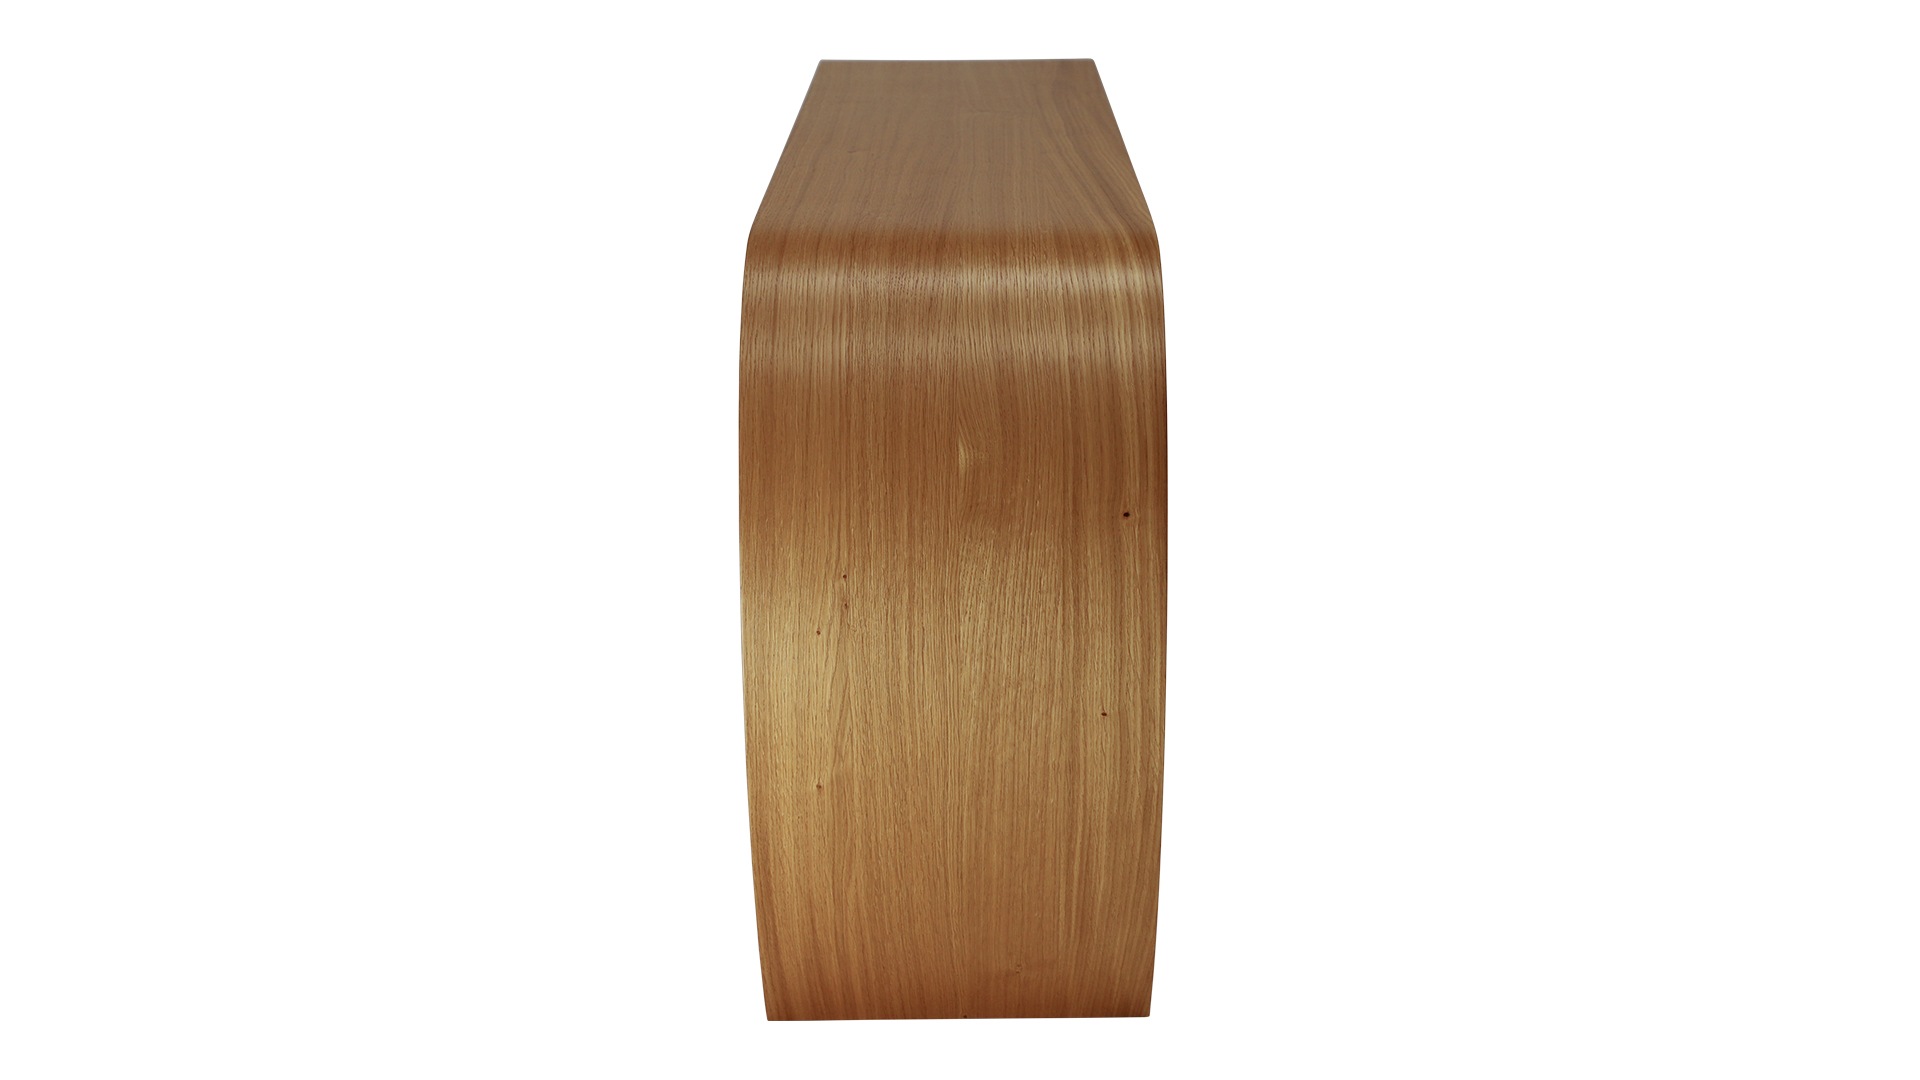 Das Sideboard Sidebow überzeugt mit seiner besonderen Form. Gefertigt wurde das Sideboard aus Echtholzfurnier. Die Farbe ist Asteiche. Es ist ein Produkt der Marke Jan Kurtz und hat eine Breite von 168 cm.